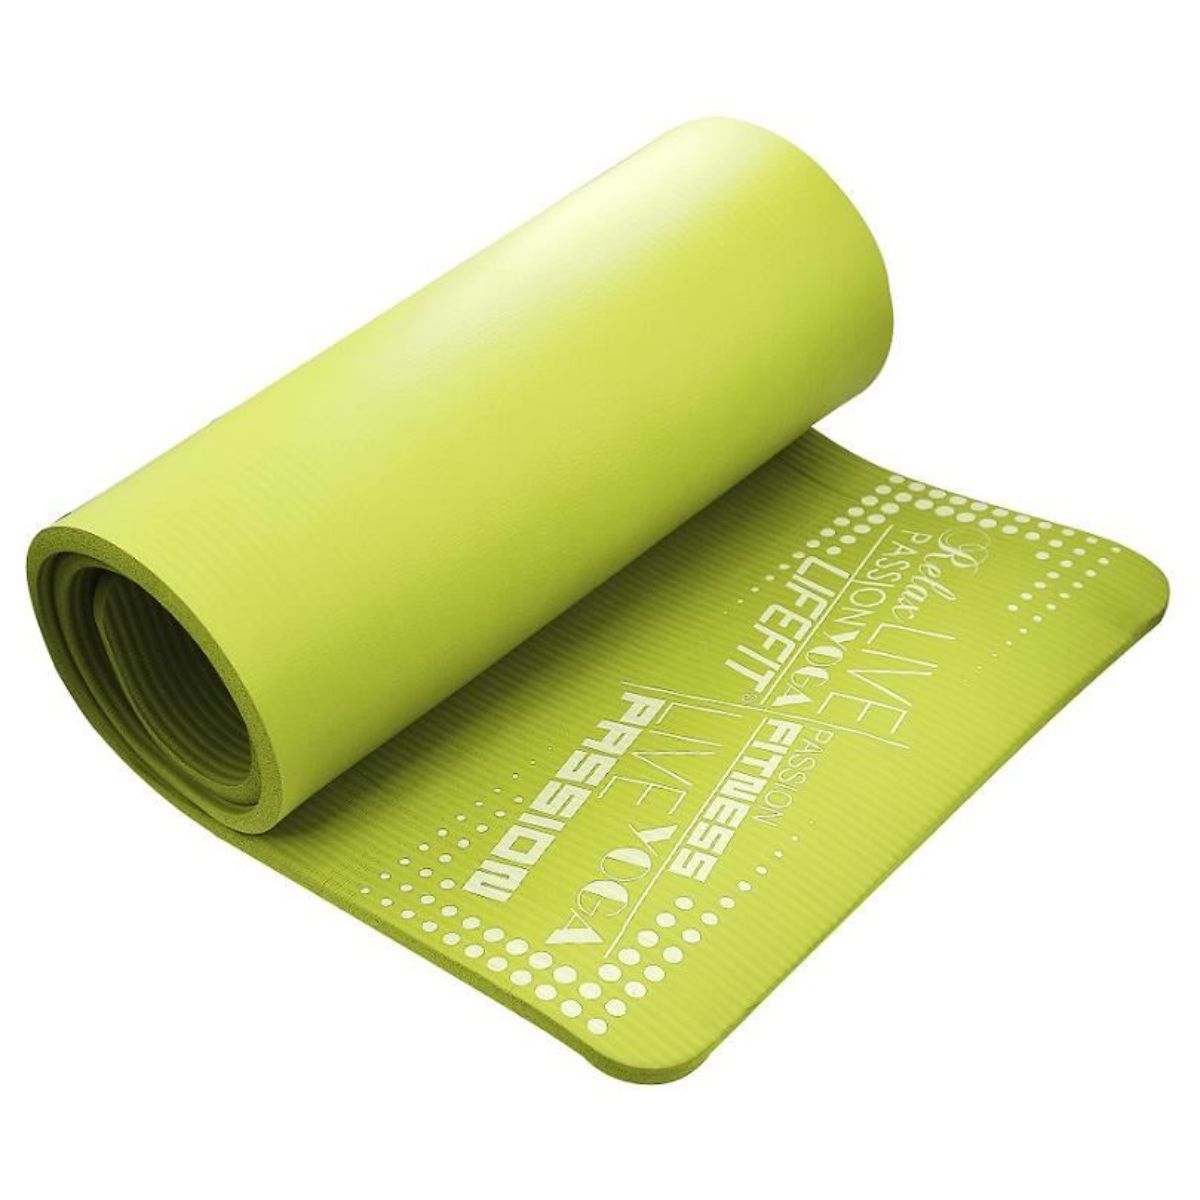 Covoras yoga Exclusive Plus DHS, Verde, 180 cm DHS imagine noua